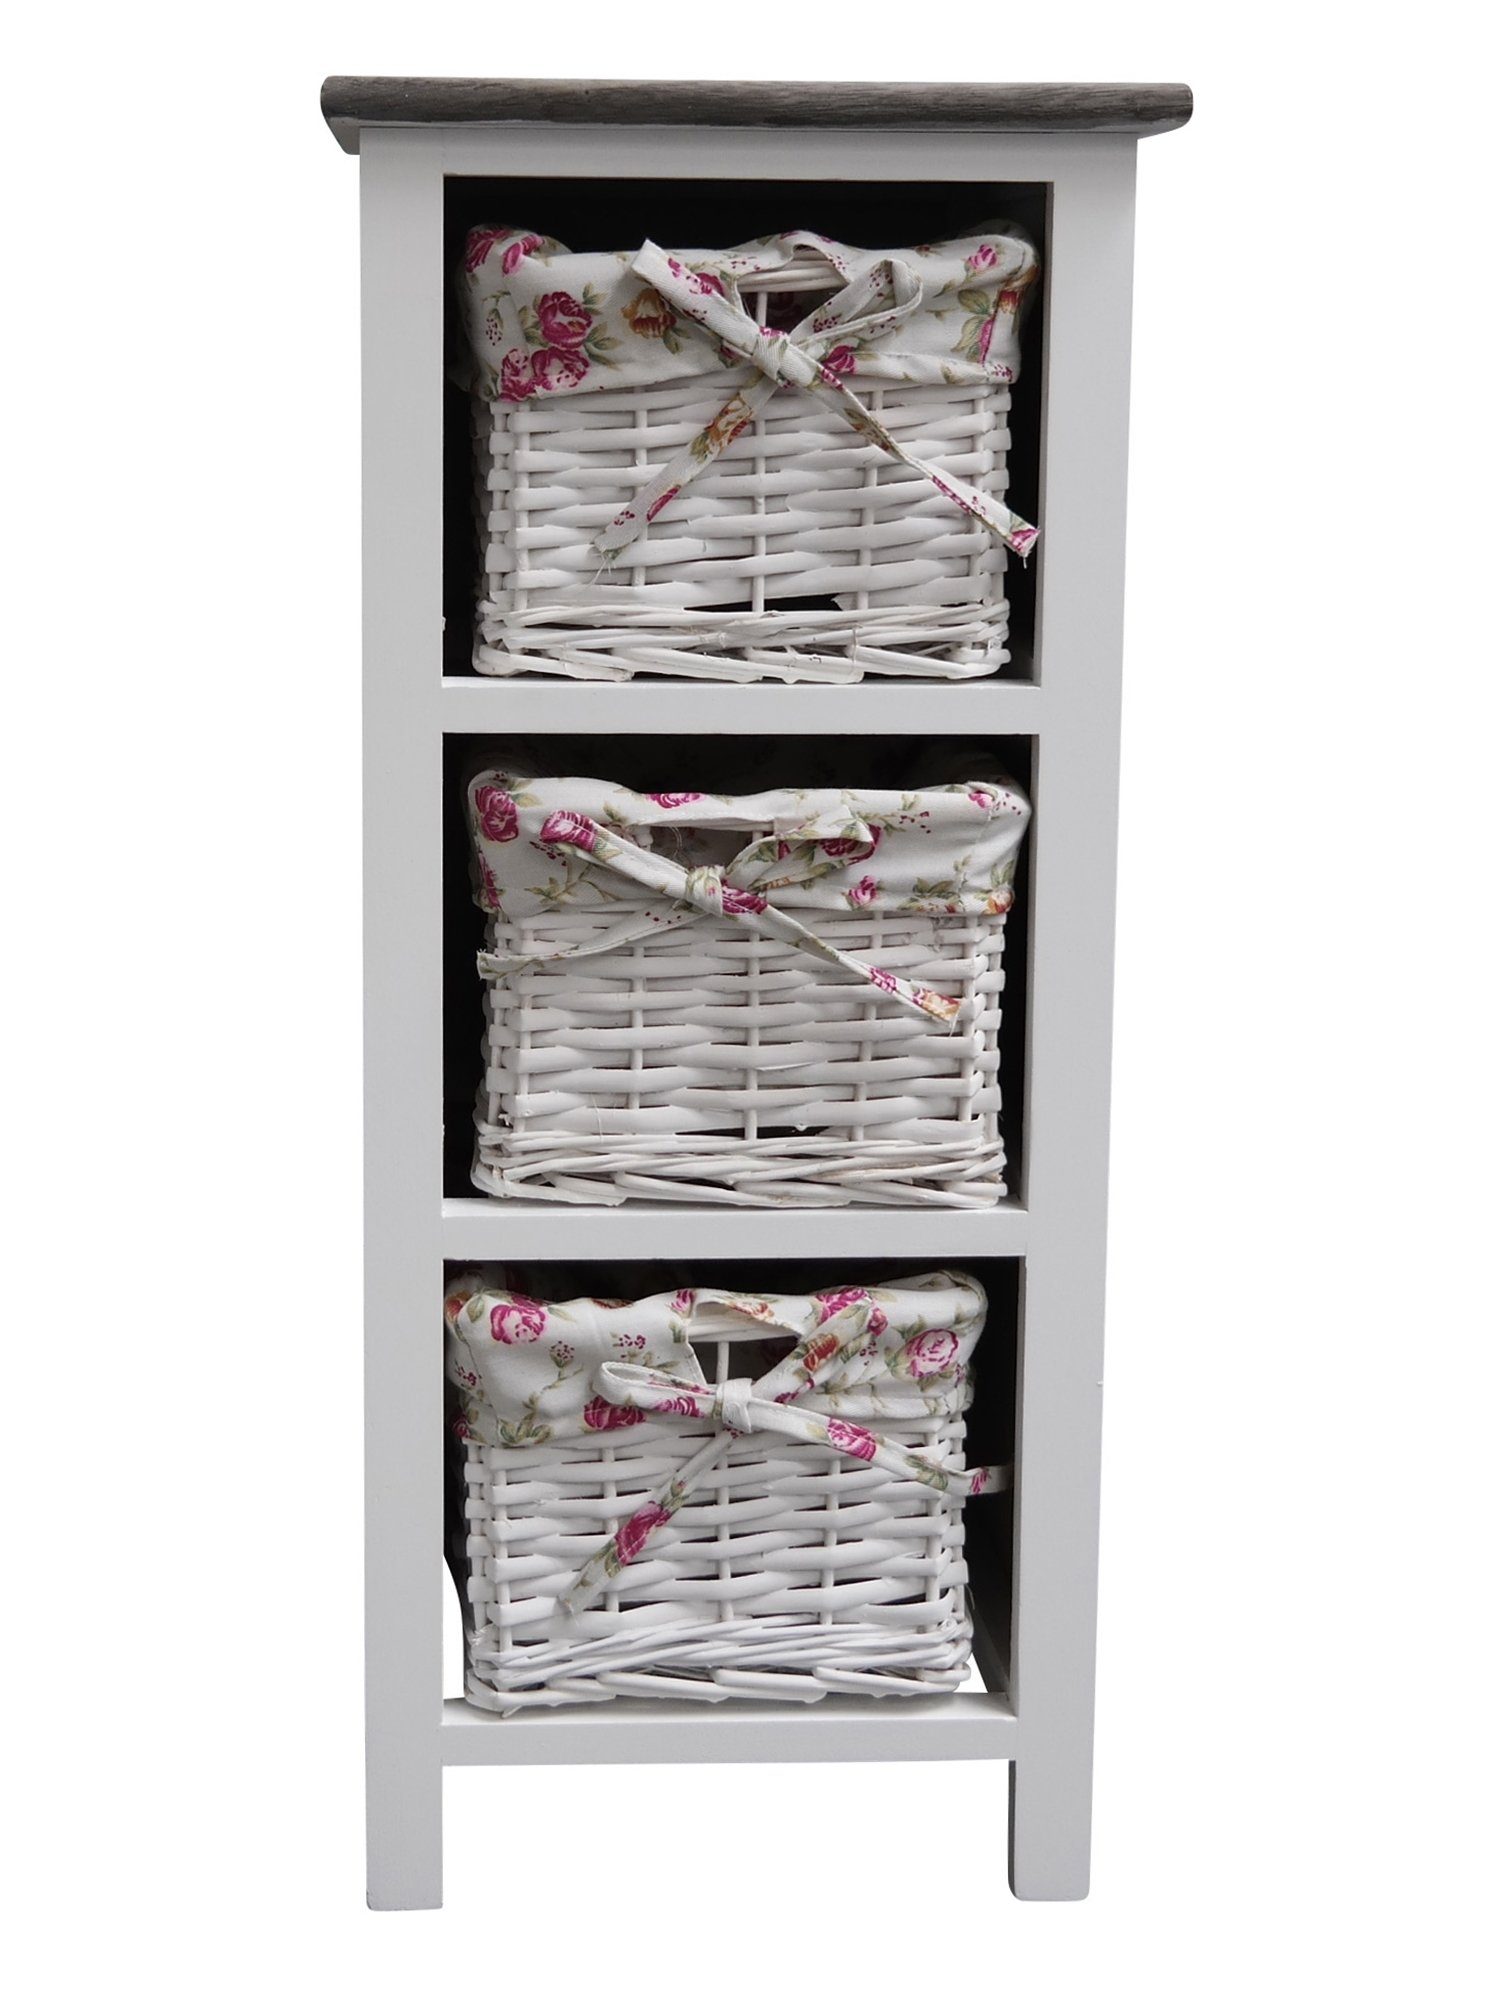 elbmöbel Nachtschrank Regal mit Körben weiß Holz Regal: 3 Ordnungsboxen  31x69x31 cm holz weiß rosalie Korb